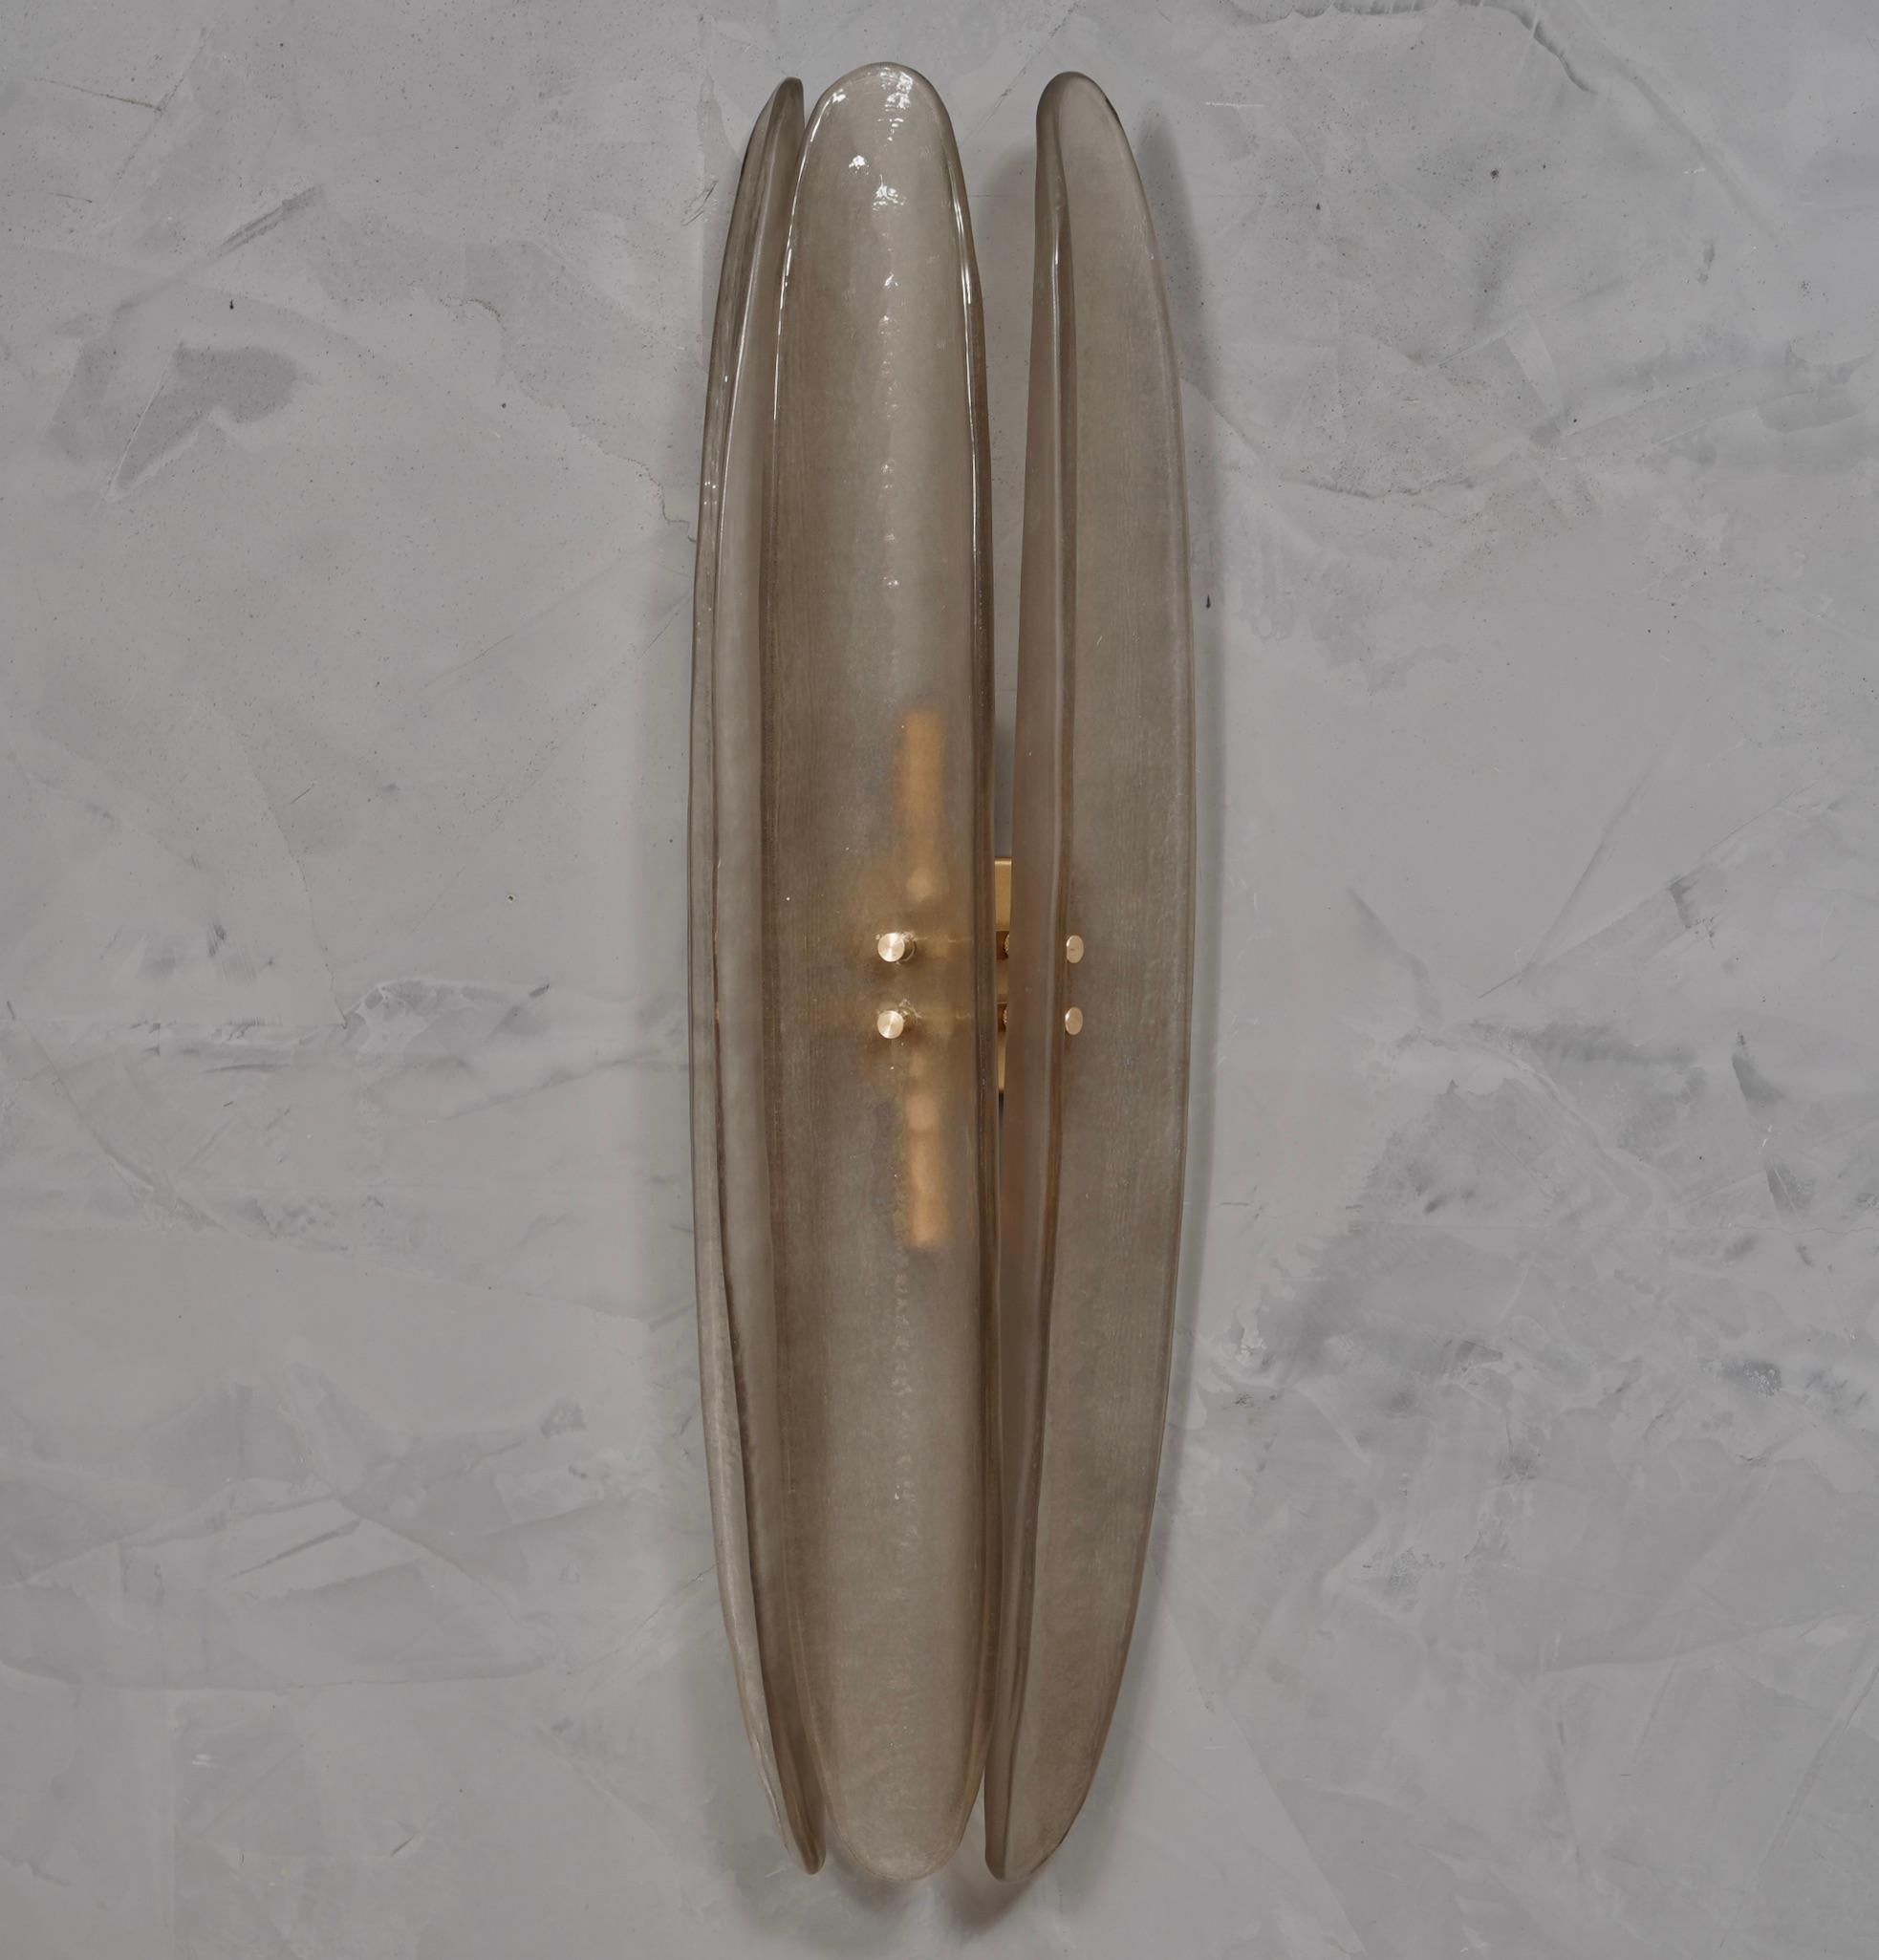 Sehr originelle Wandlampe aus Murano-Glas mit einem sehr länglichen Design des Glasblattes und einer einzigartigen rauchigen Farbe.

Die Applikation besteht aus einer goldfarbenen Metallstruktur, an der drei ganz besondere Blätter aus Murano-Glas